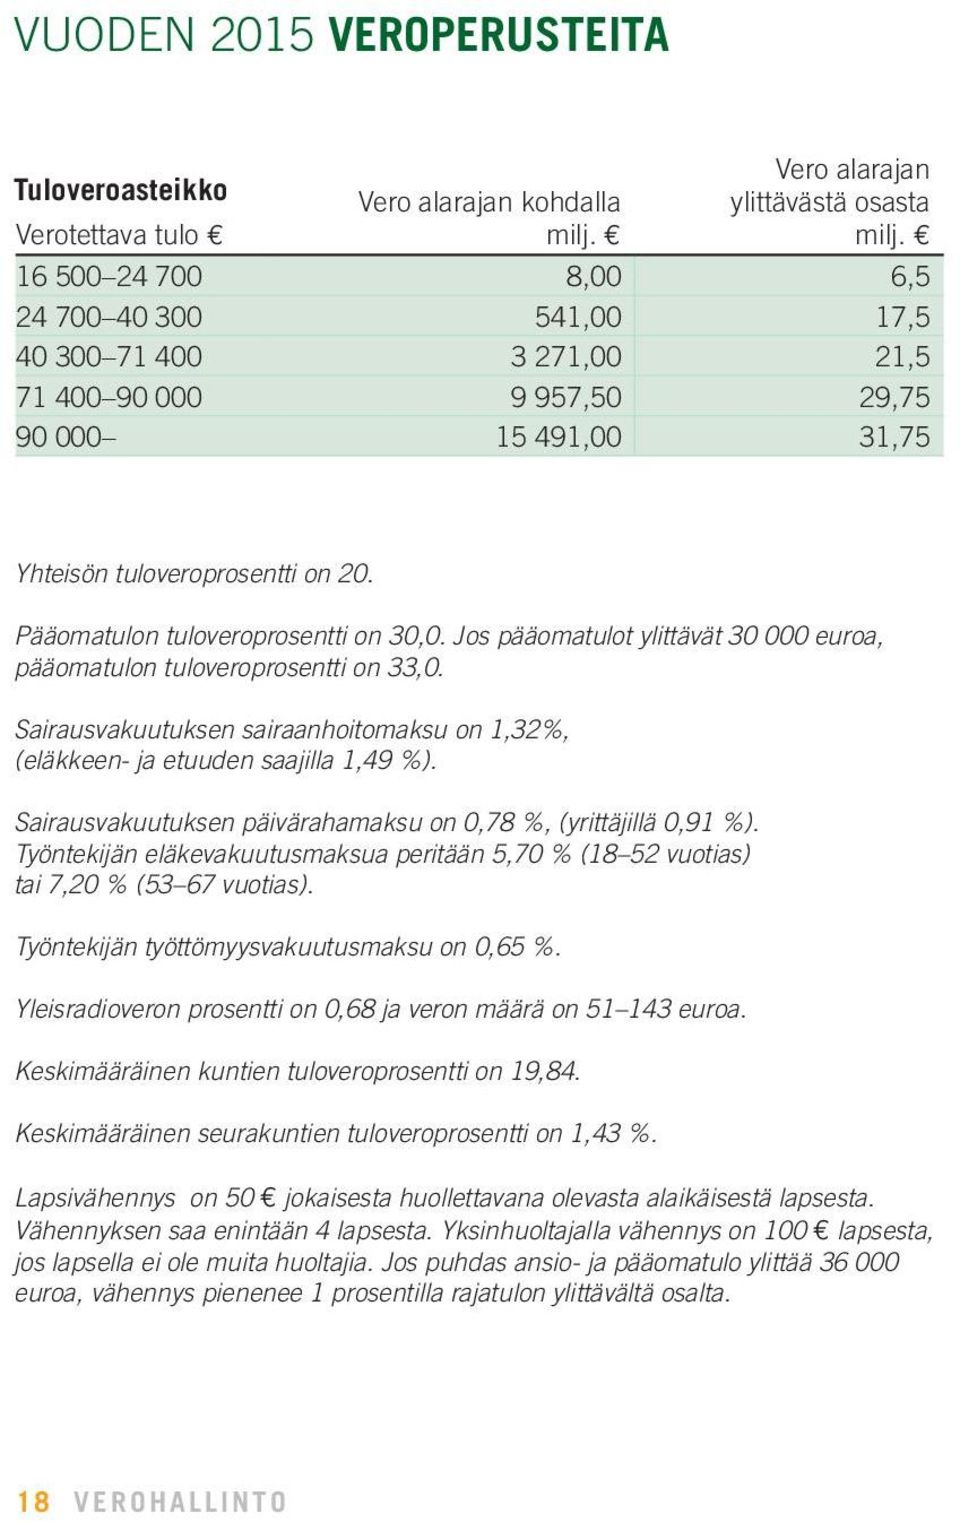 Pääomatulon tuloveroprosentti on 30,0. Jos pääomatulot ylittävät 30 000 euroa, pääomatulon tuloveroprosentti on 33,0.